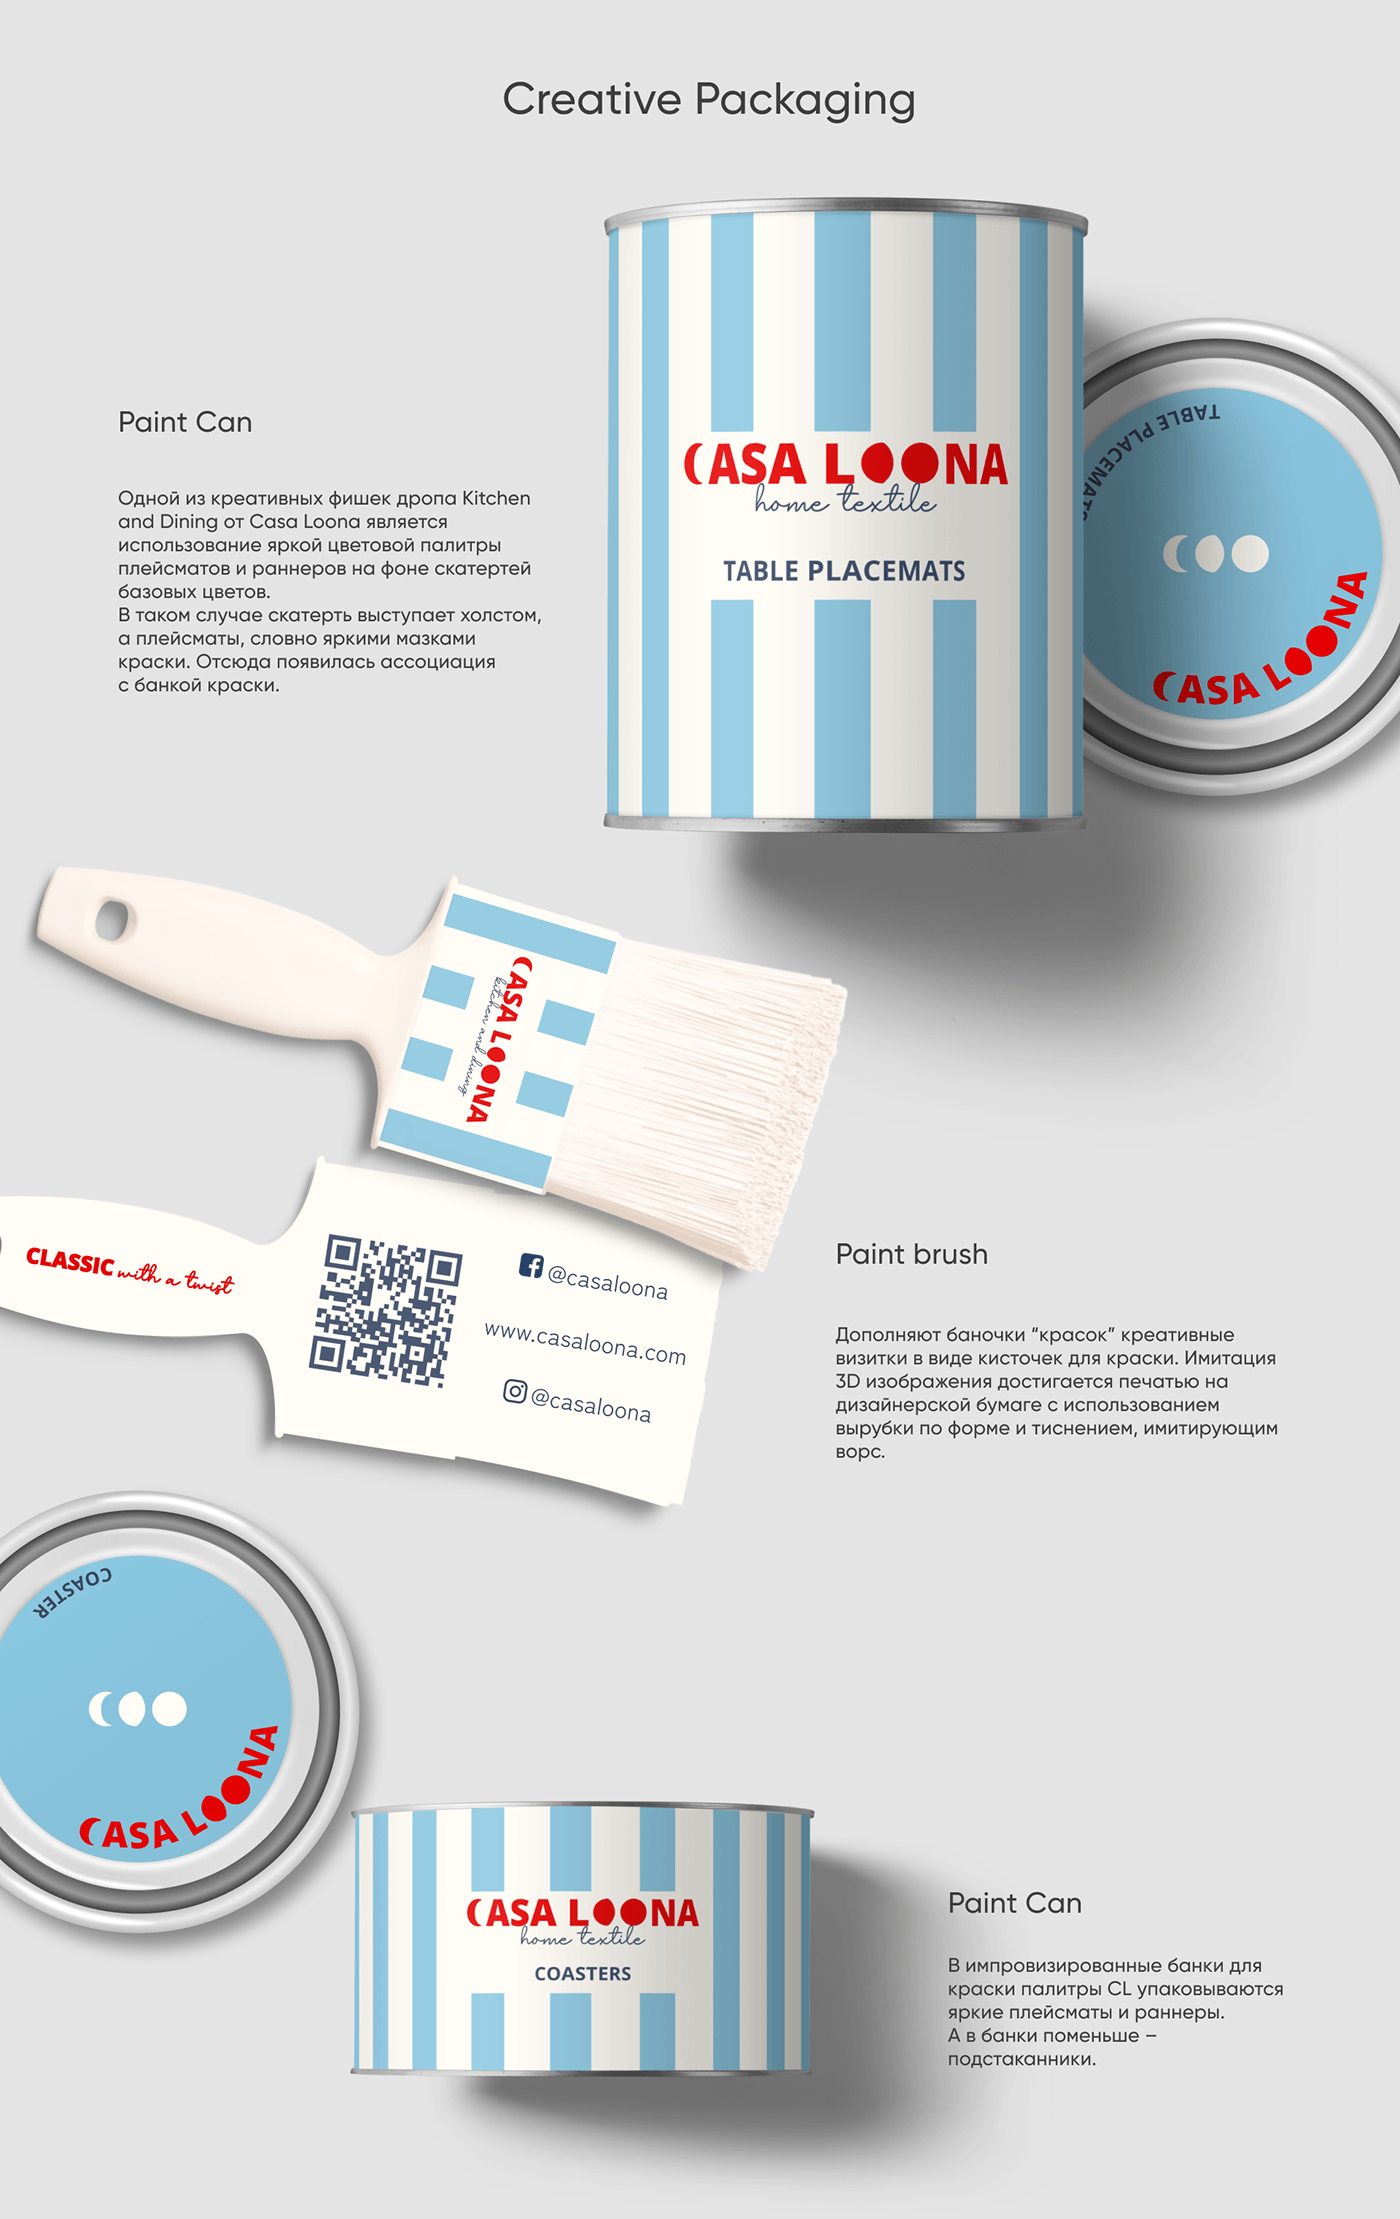 Creative packaging